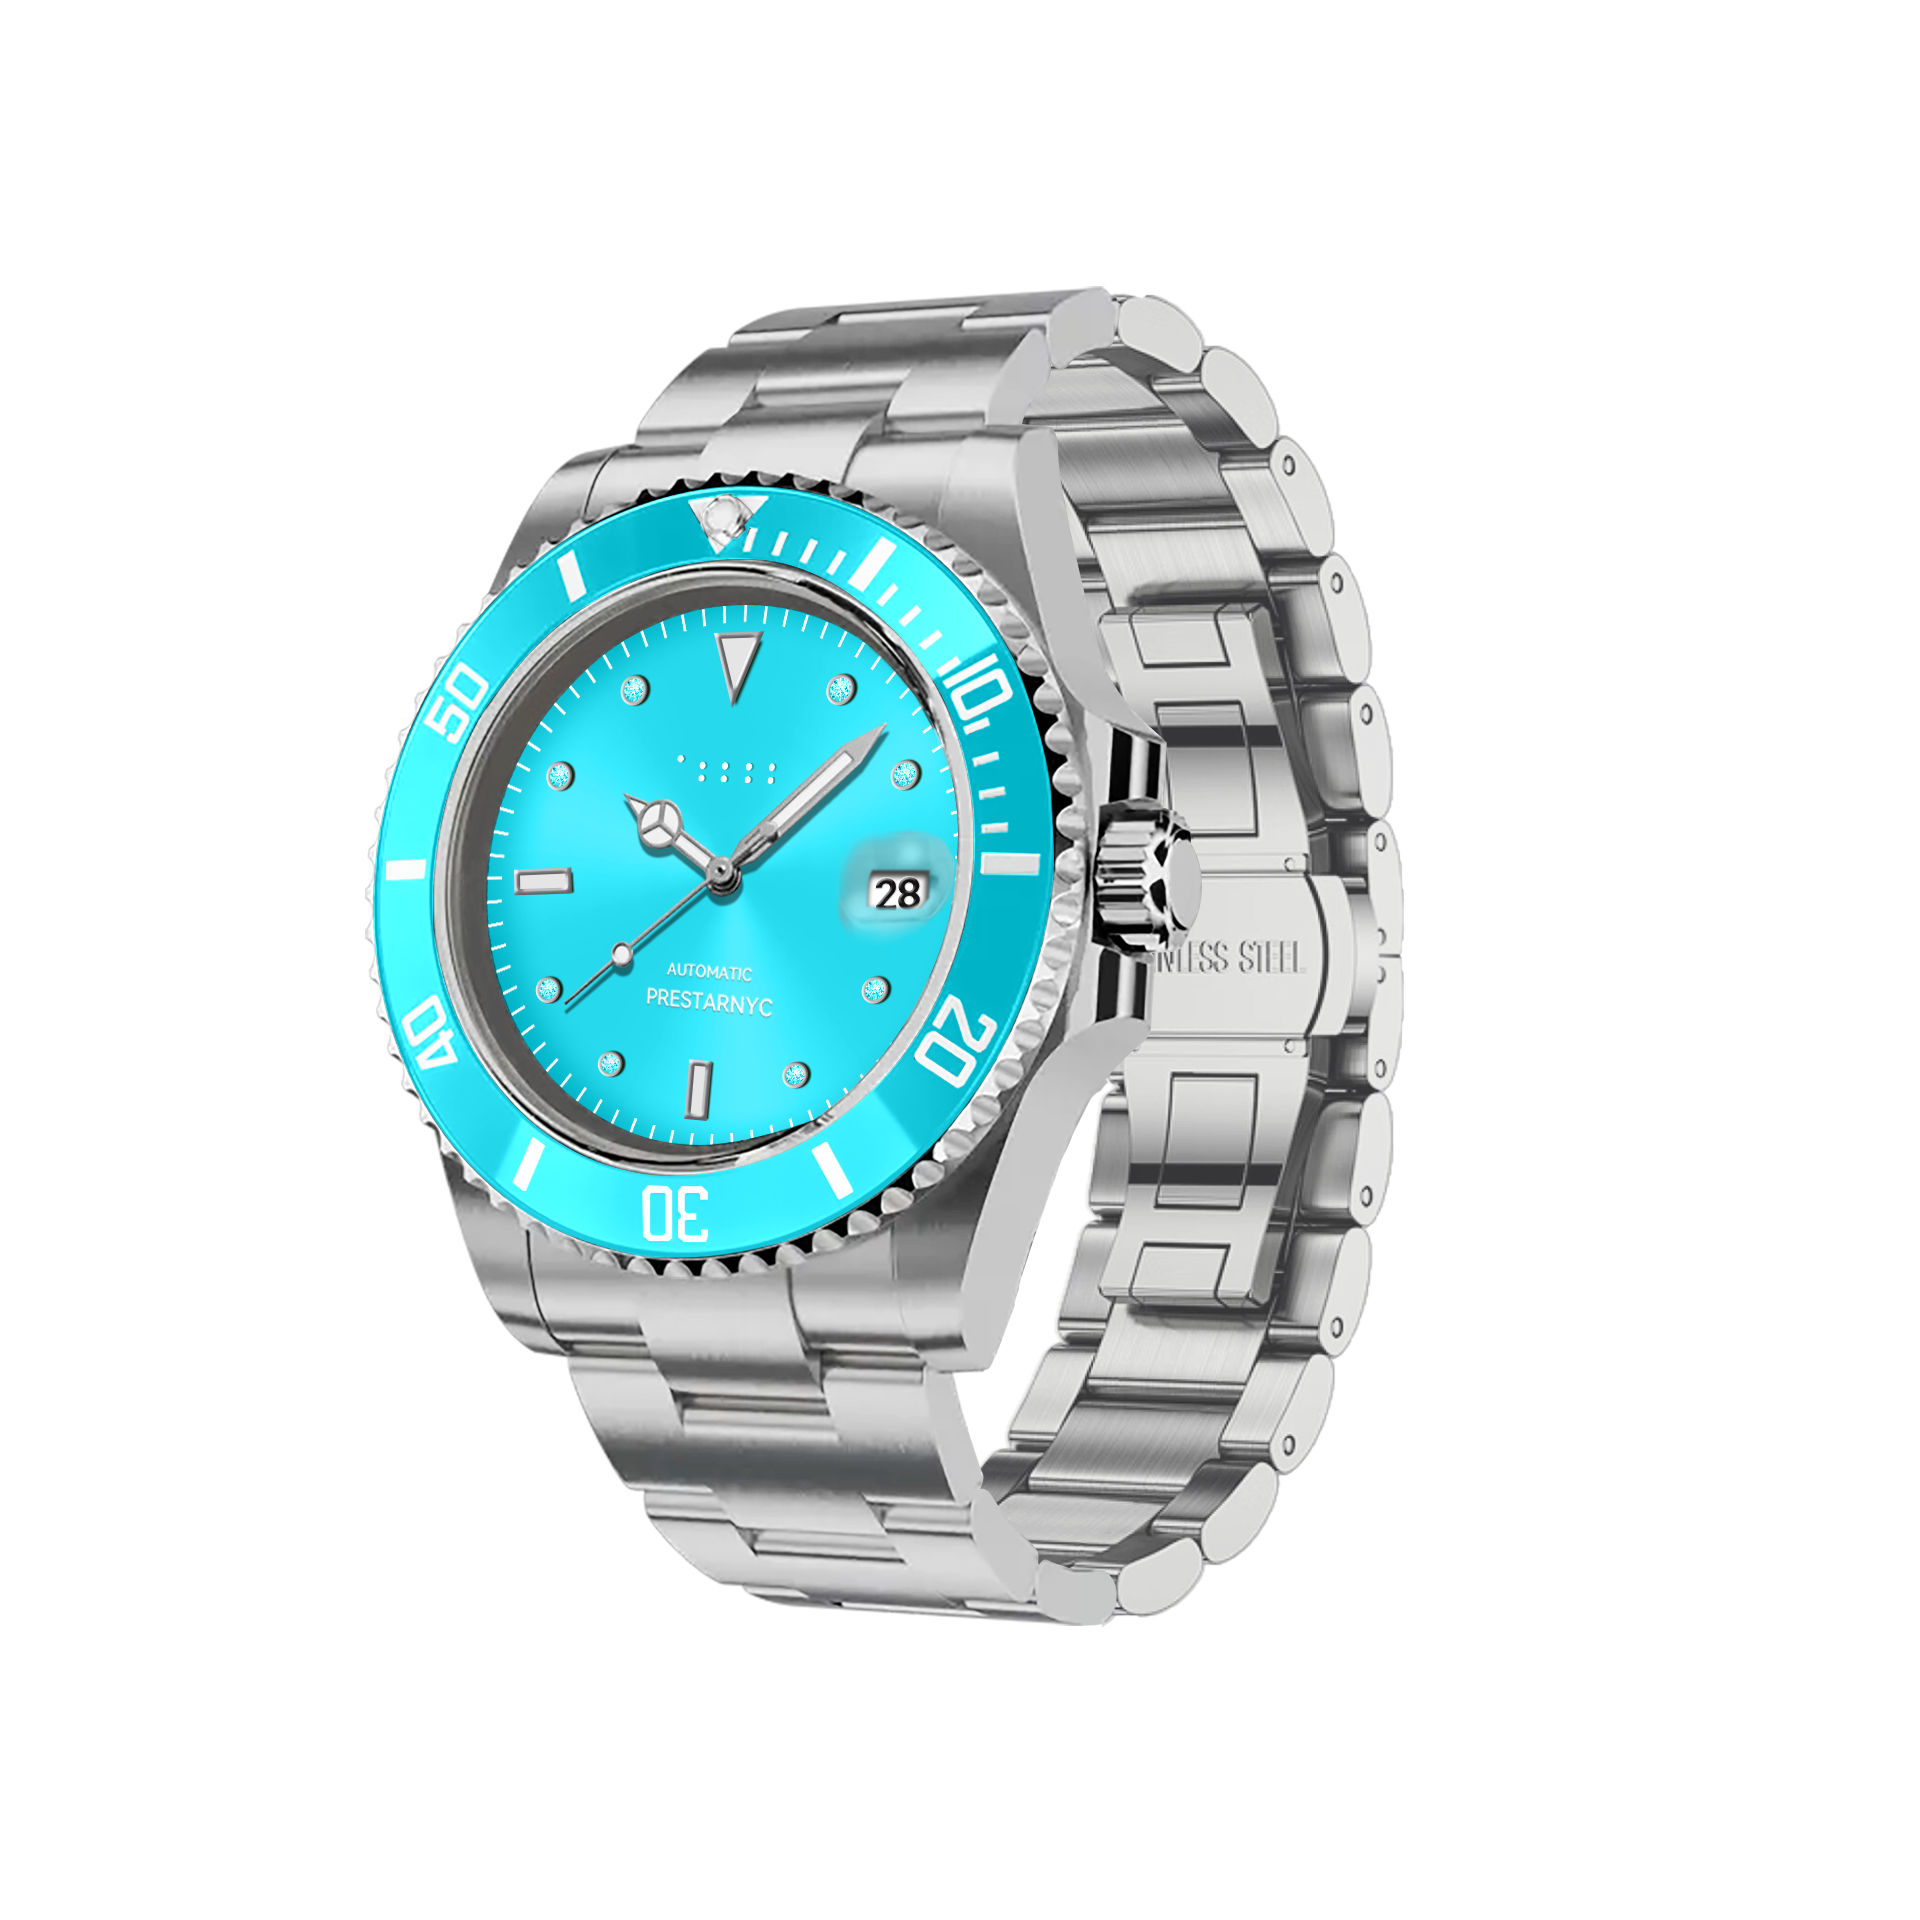 Prestar NYC Aquaman Classic Color Gemstone Watch (Ocean Blue)